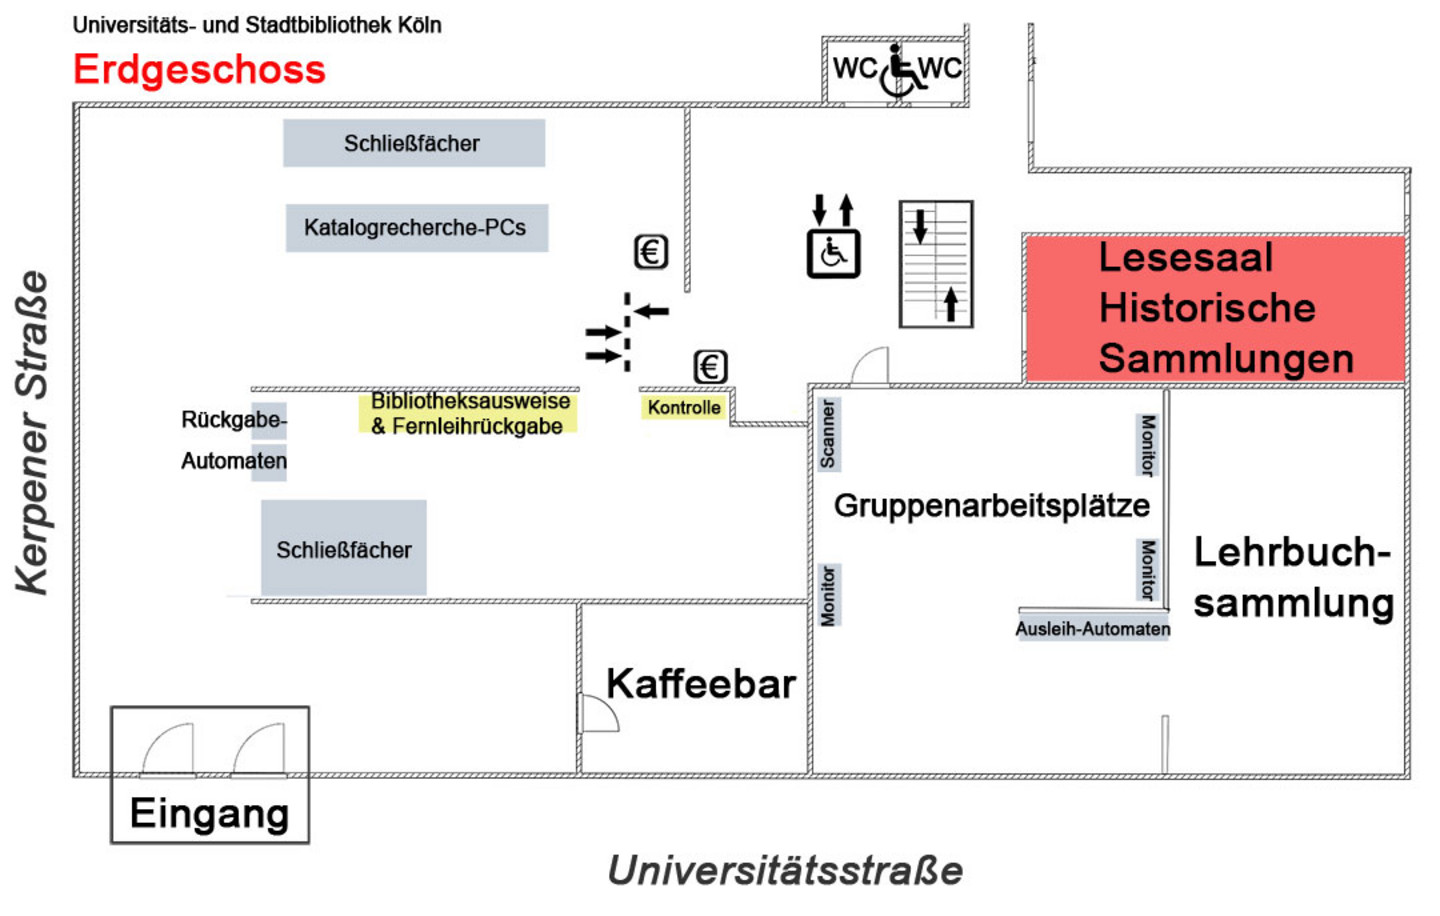 Lageplan des Ergeschosses der Universitäts- und Stadtbibliothek Köln. Hervorgehoben ist der Lesesaal Historische Sammlungen.